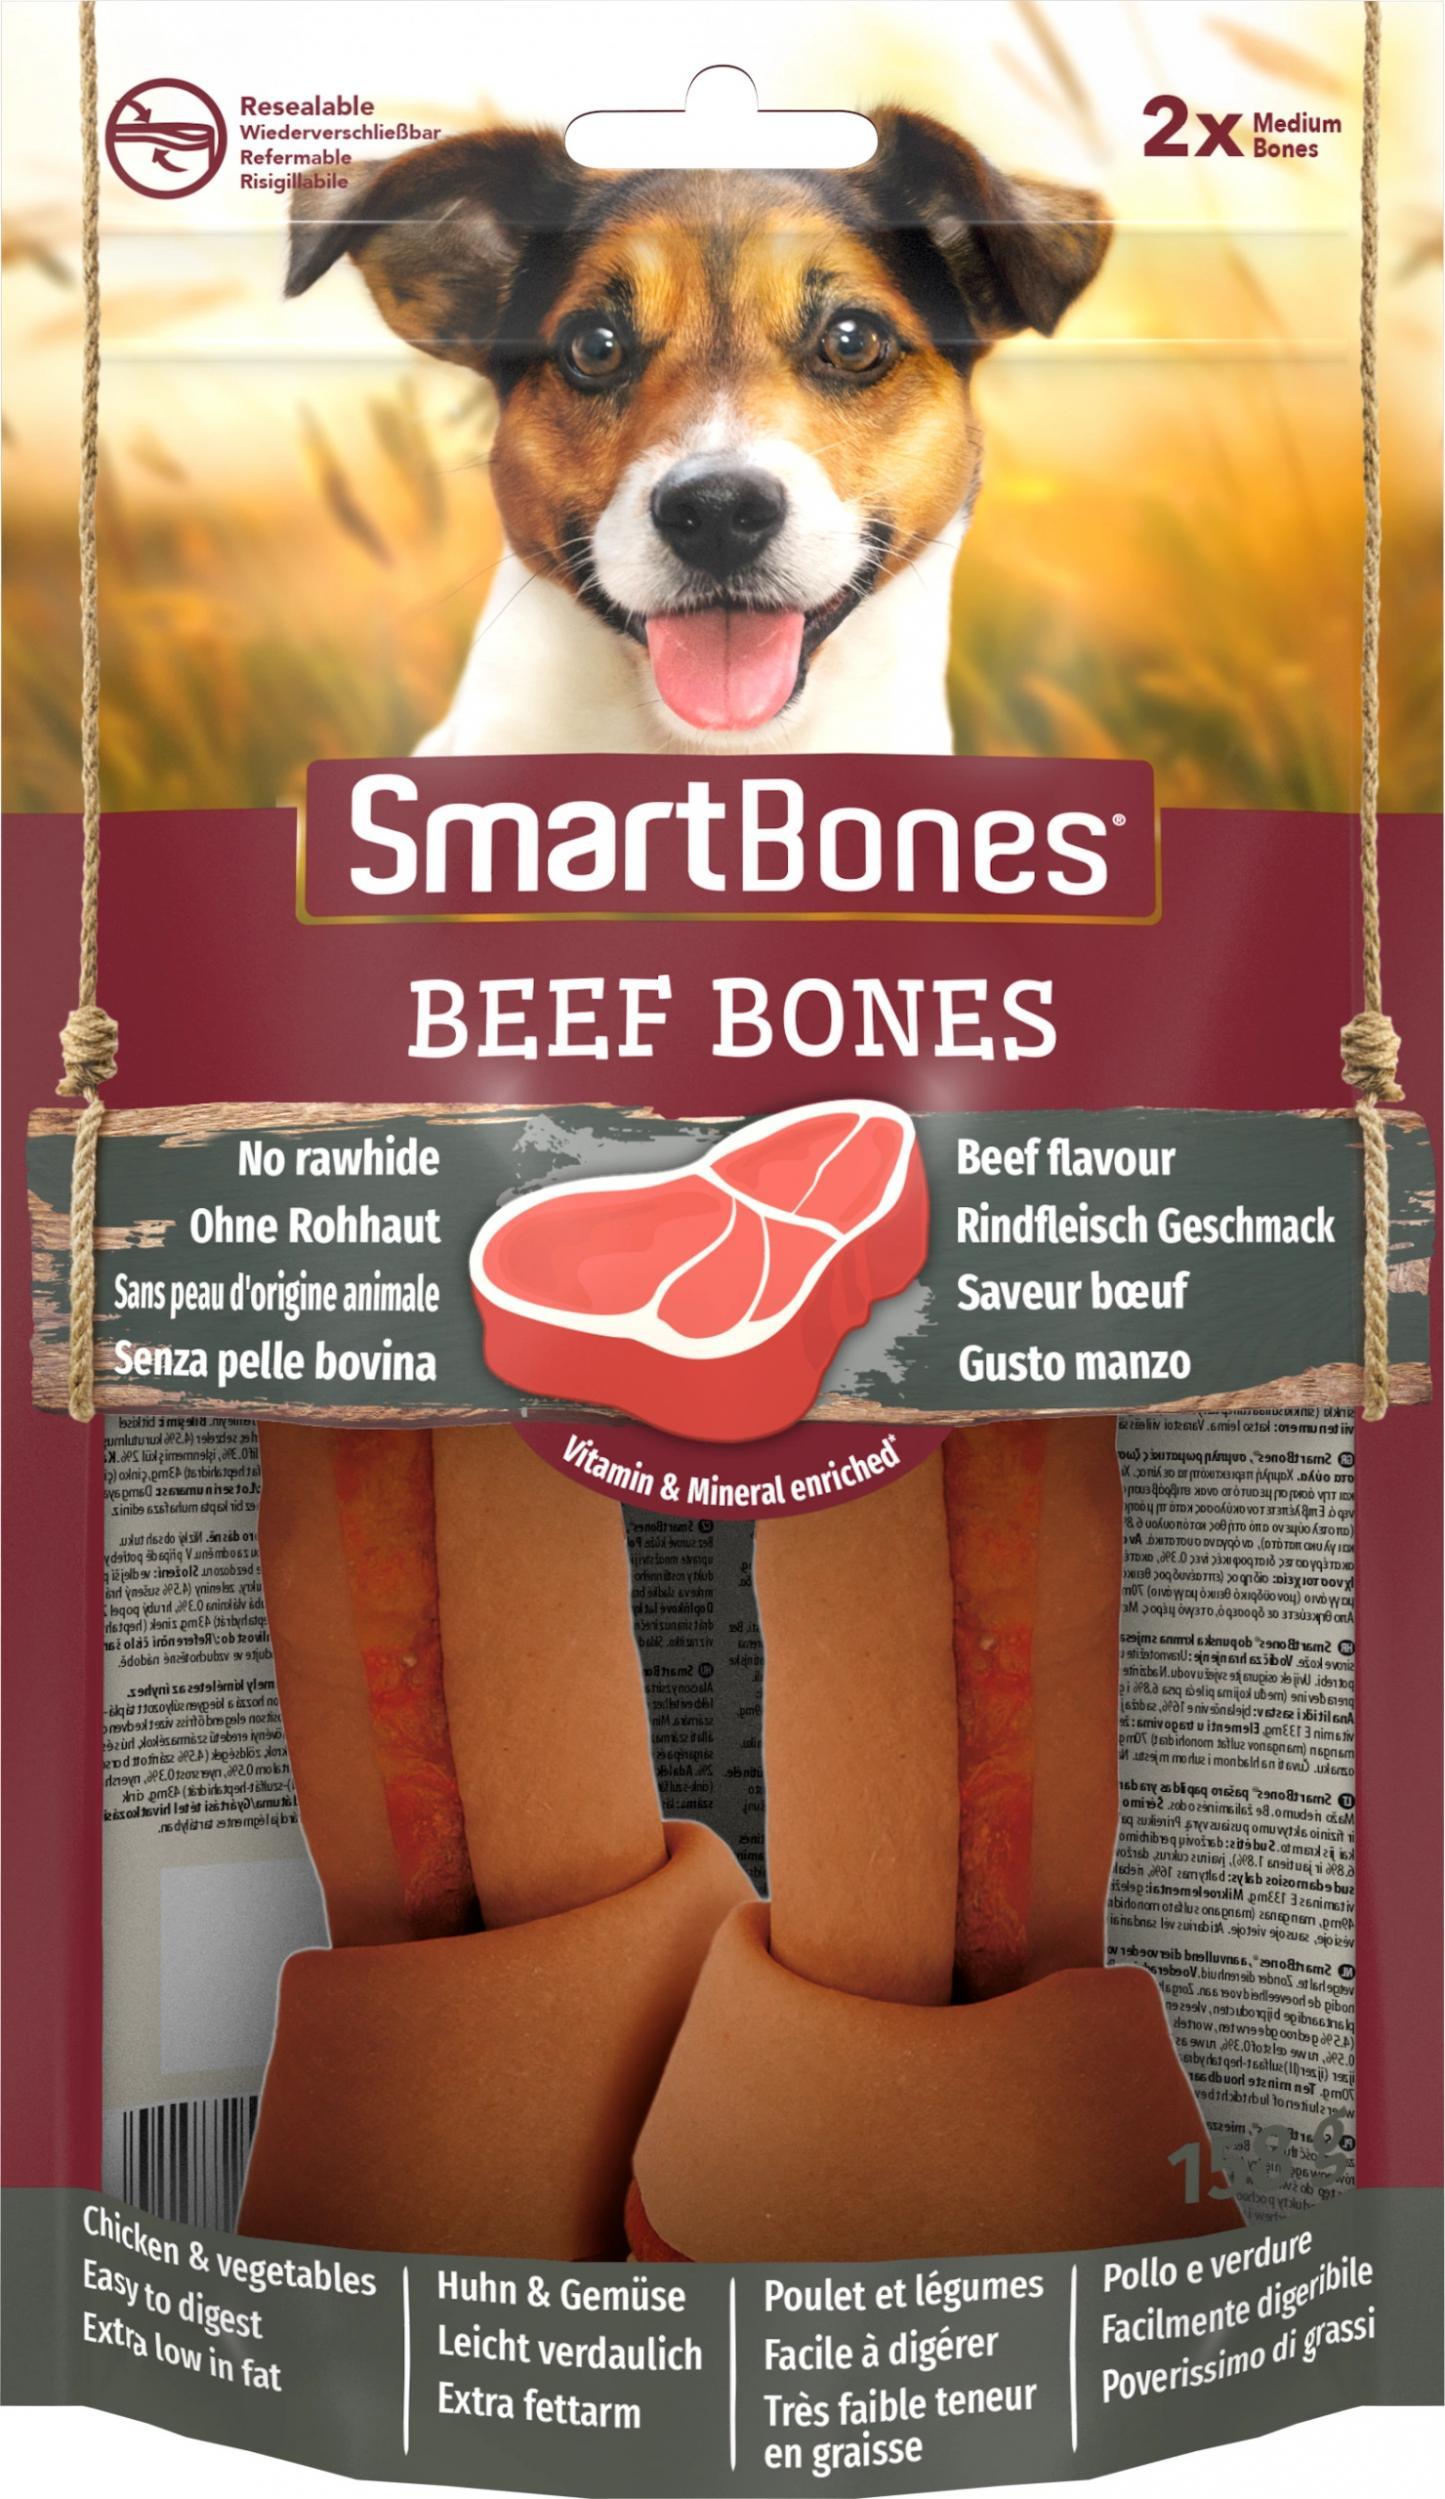 Biscuite Recompense si Proteina pentru Intarirea Dintilor cu Carne uscata Smart Bones 661531, 158g